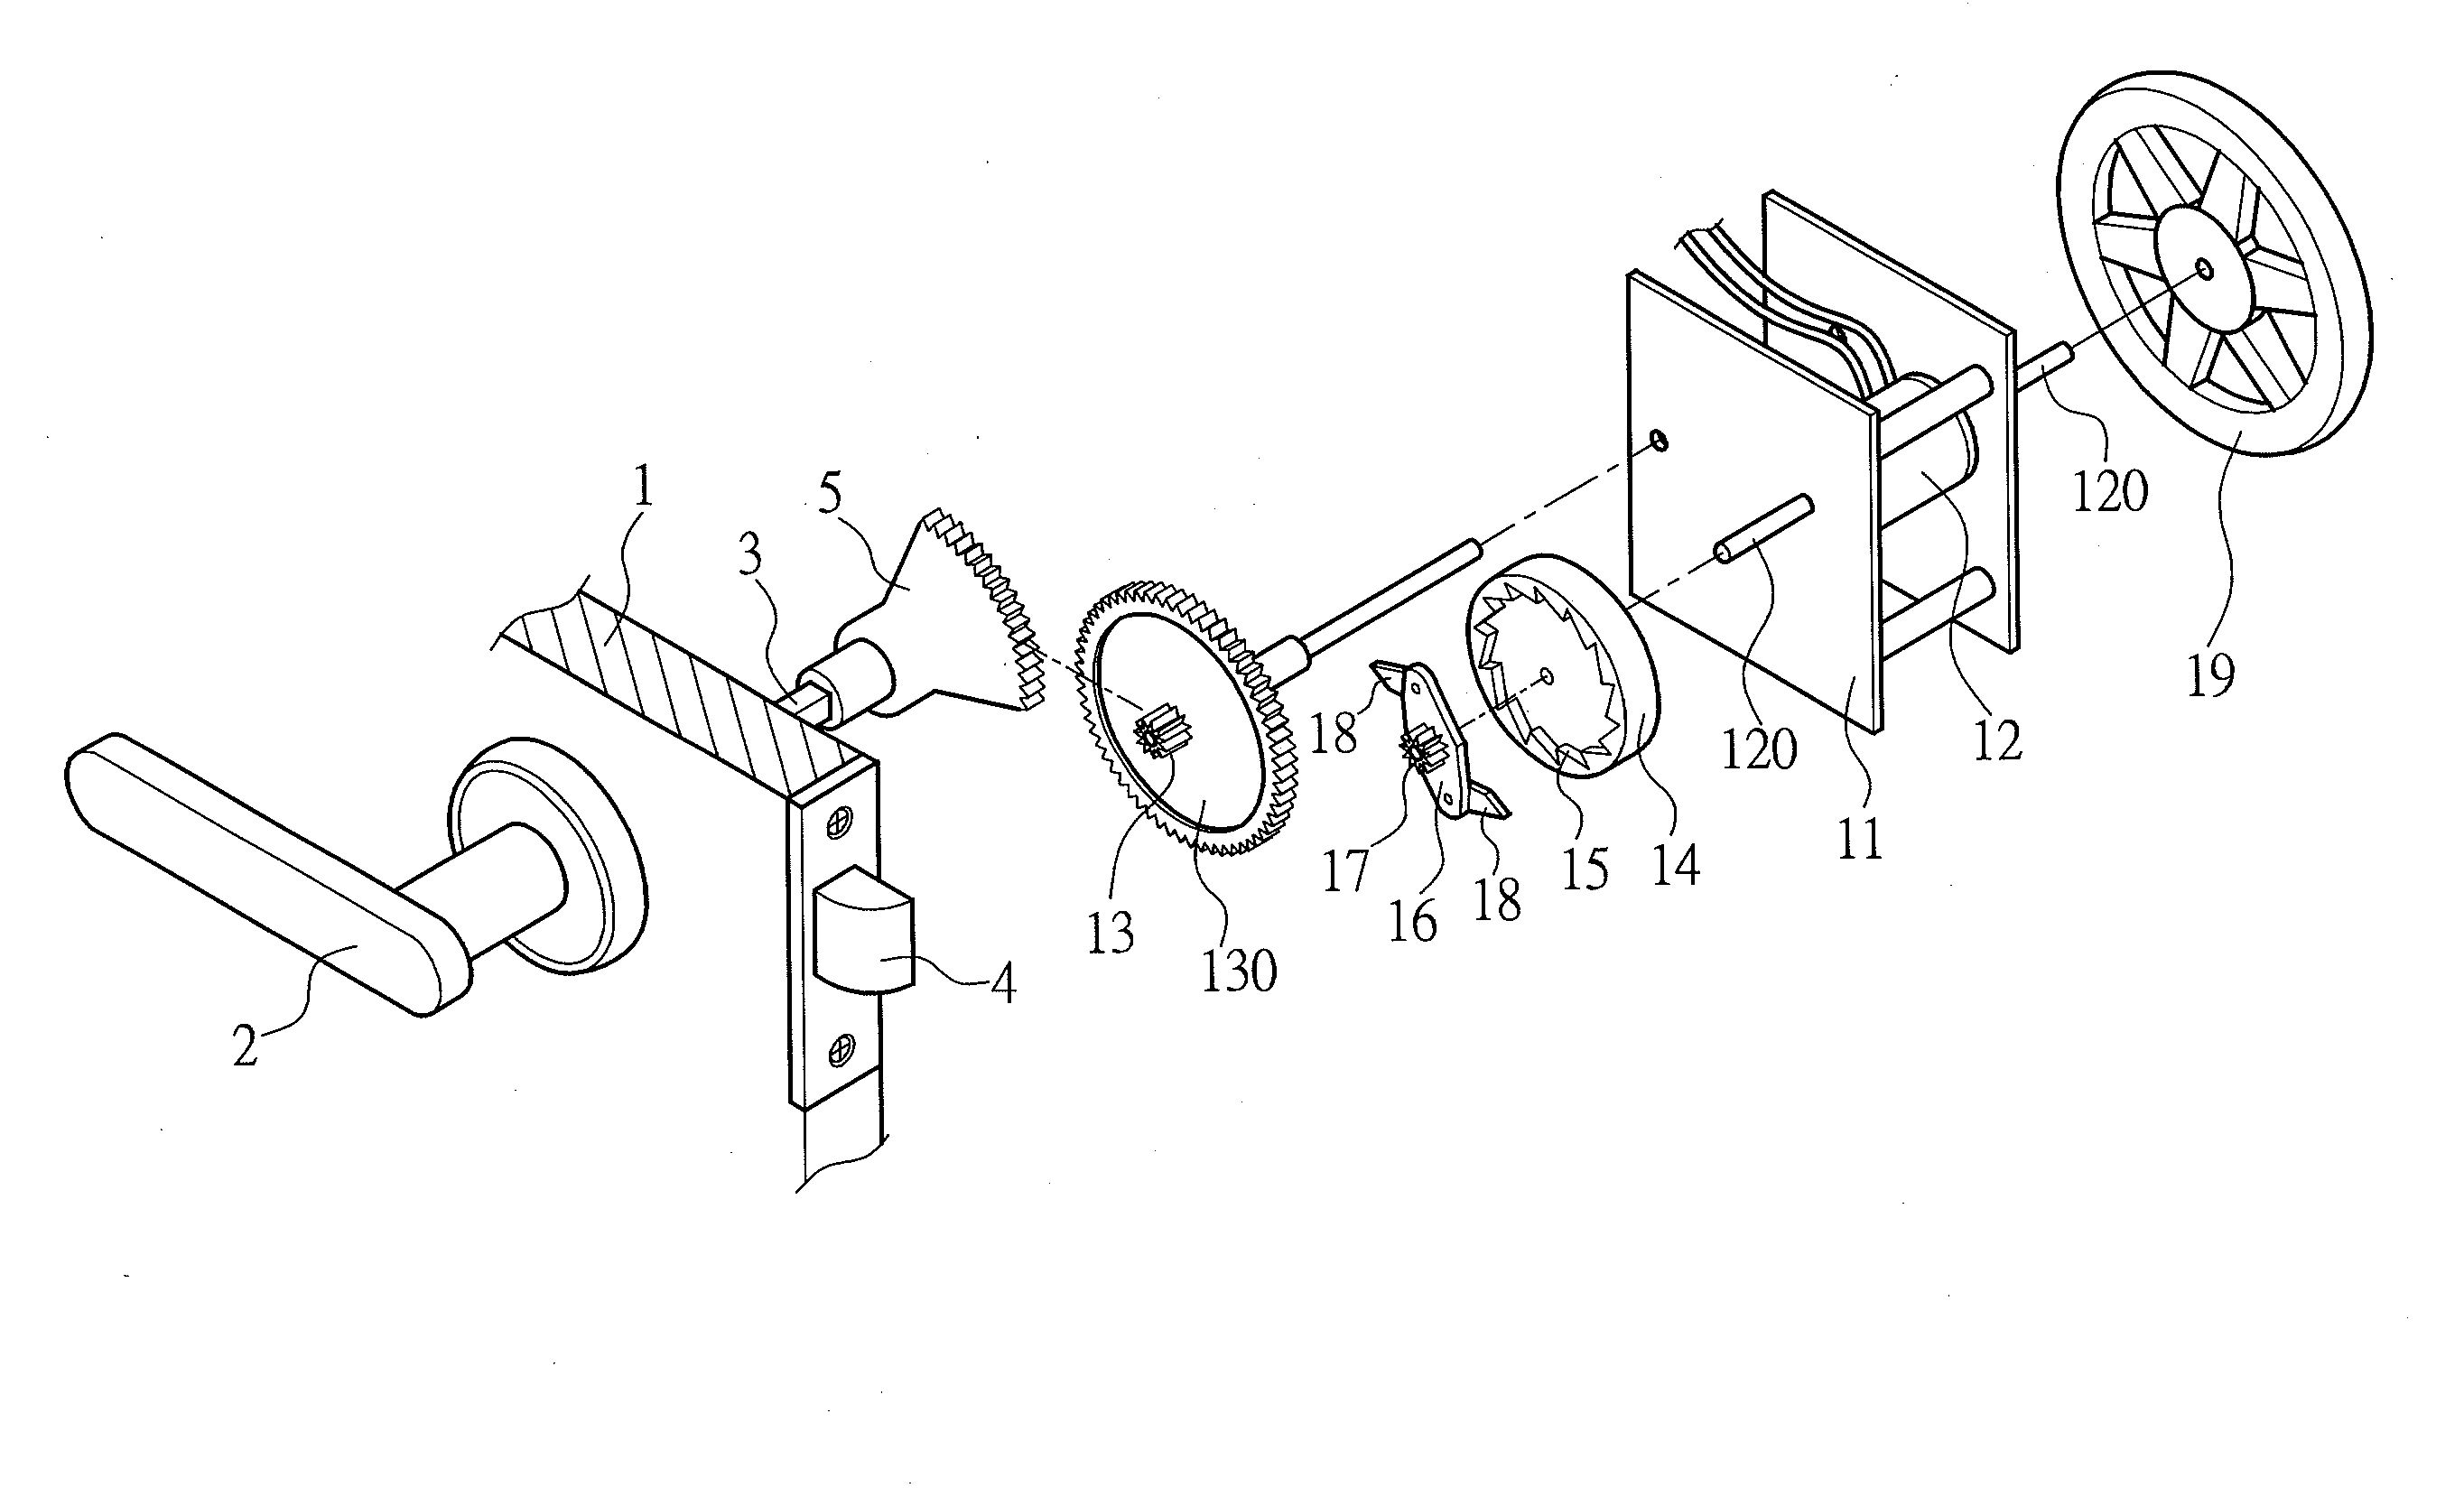 Power supply device for door handle